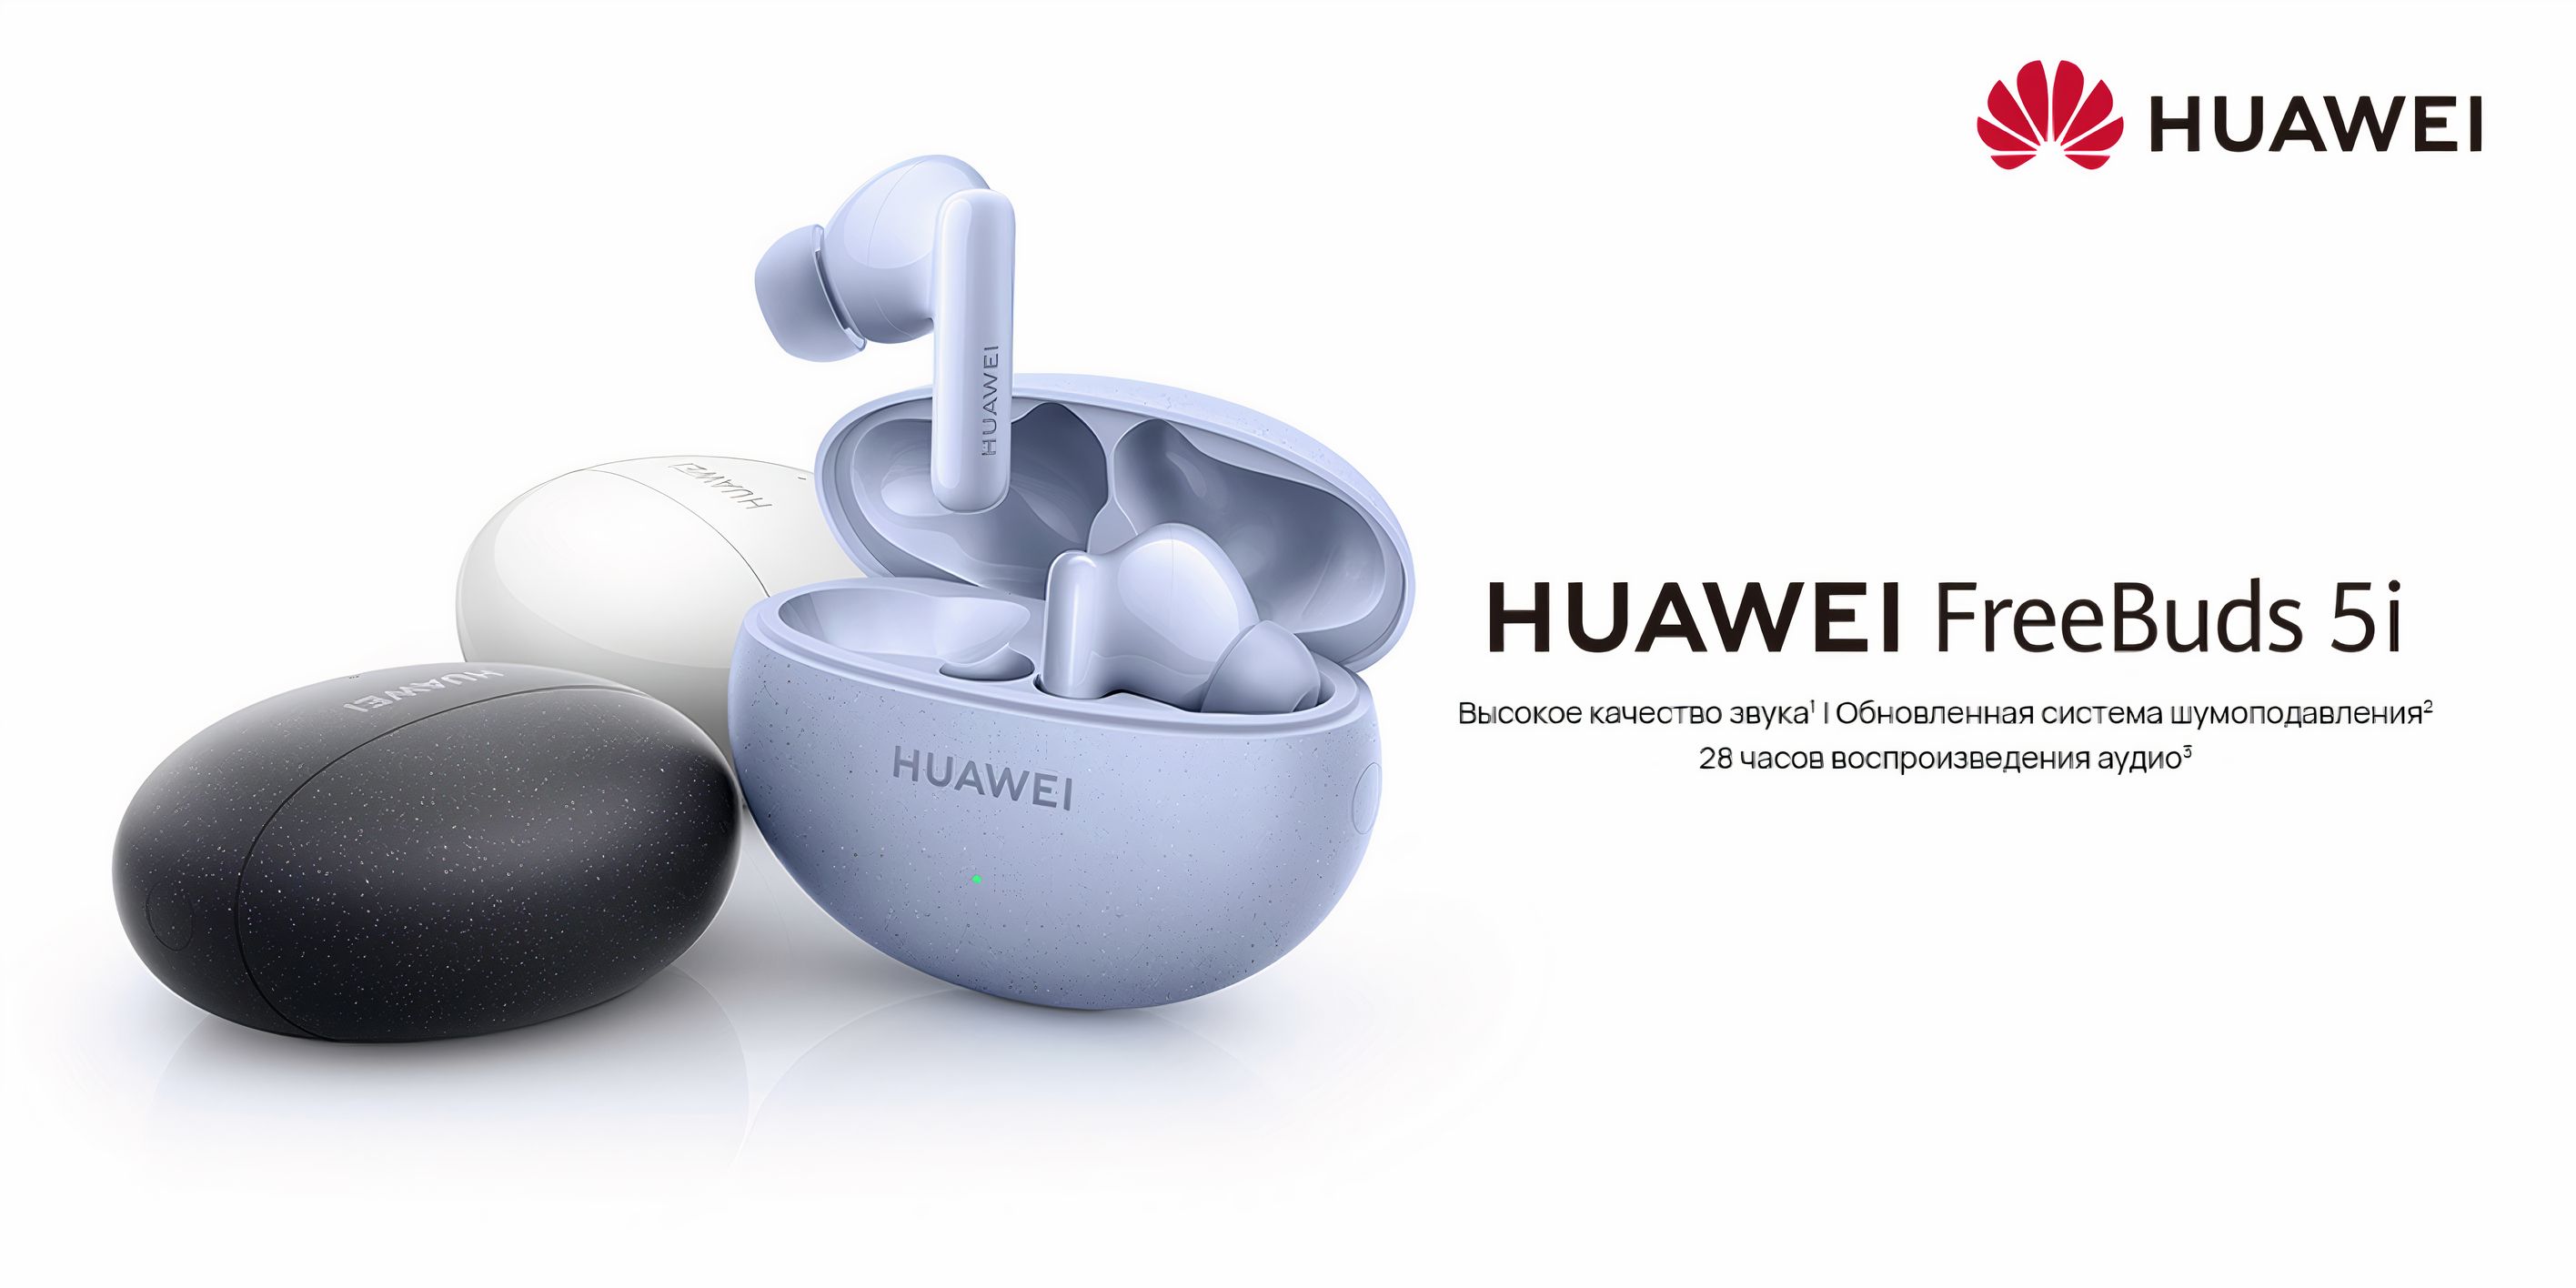 Huawei freebuds купить москва. Беспроводные наушники Huawei freebuds 5i. Наушники TWS Huawei freebuds 5i голубой. Наушники Huawei freebuds 5i белые. Хуавей наушники беспроводные freebuds 5.